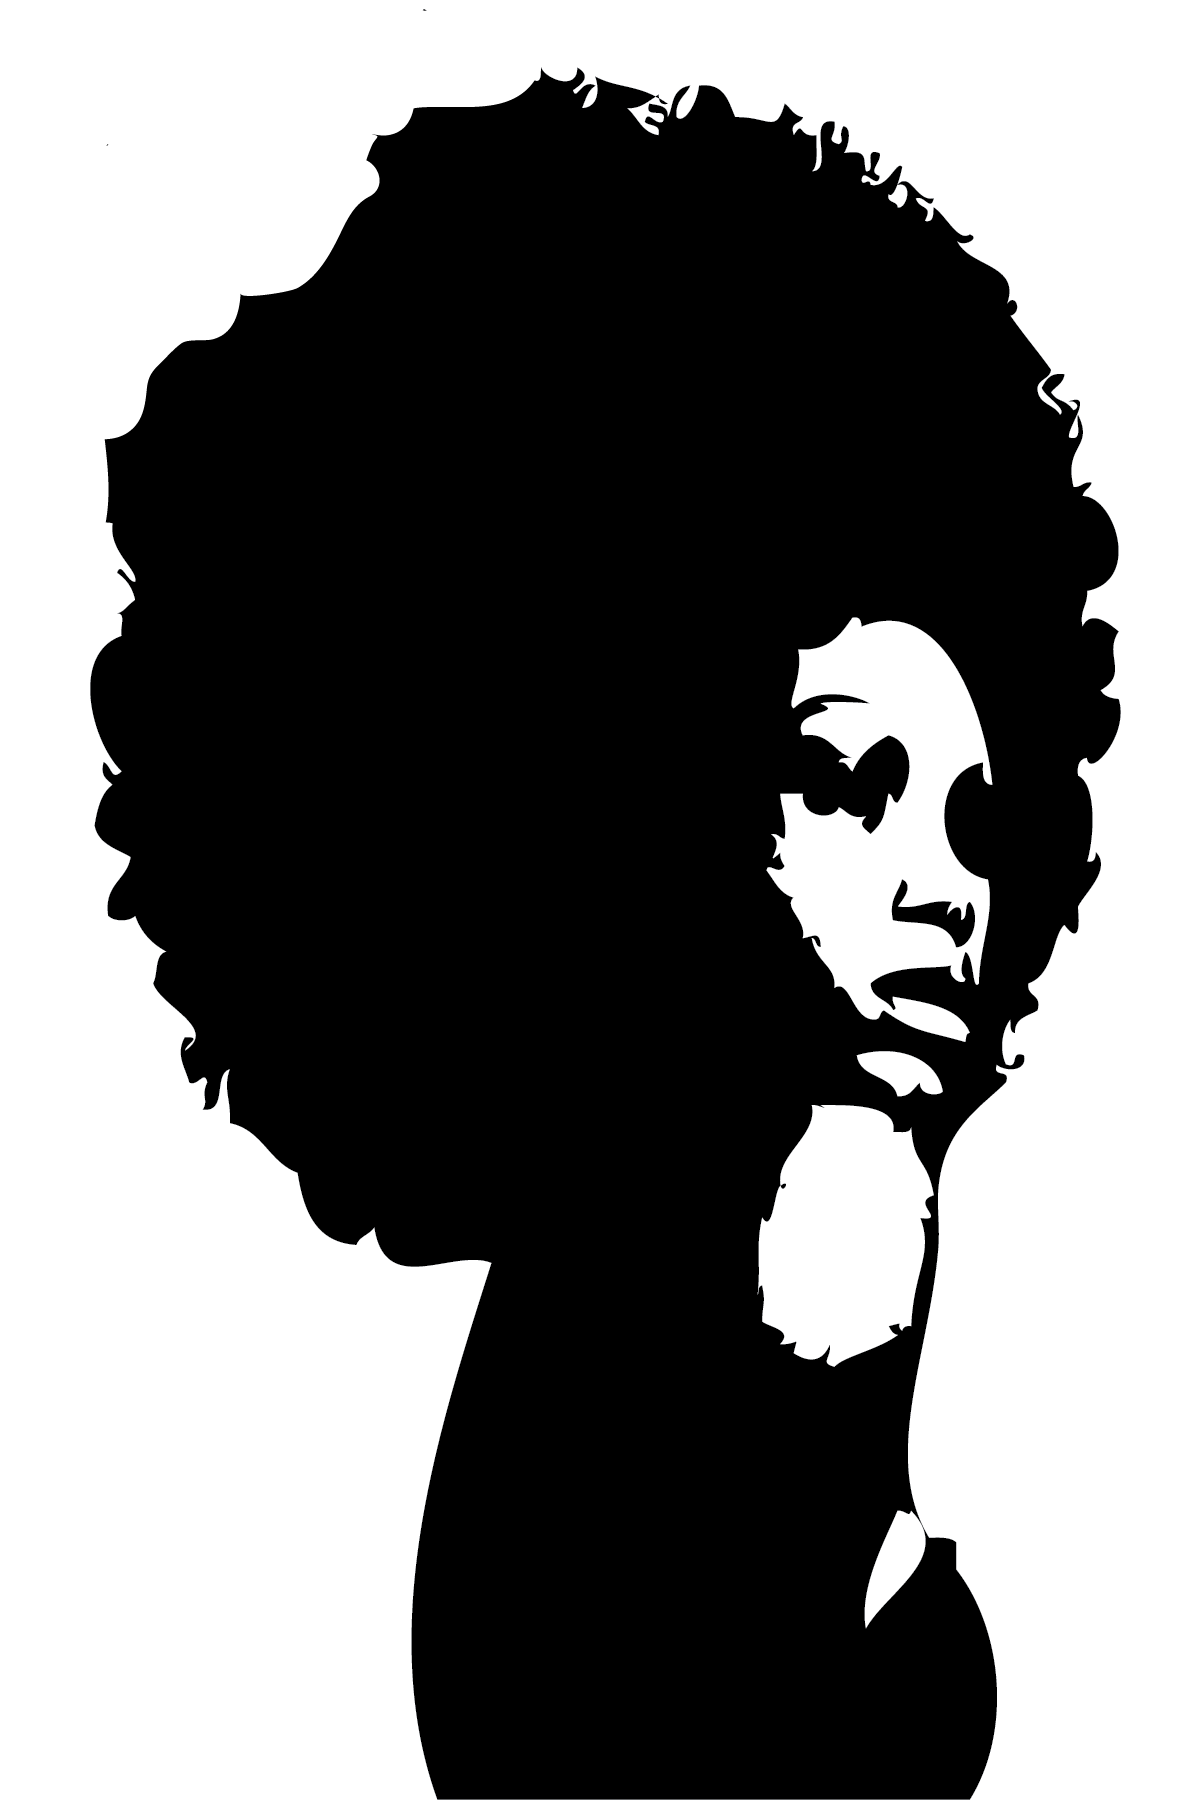 Black Woman Silhouette Clip Art - ClipArt Best